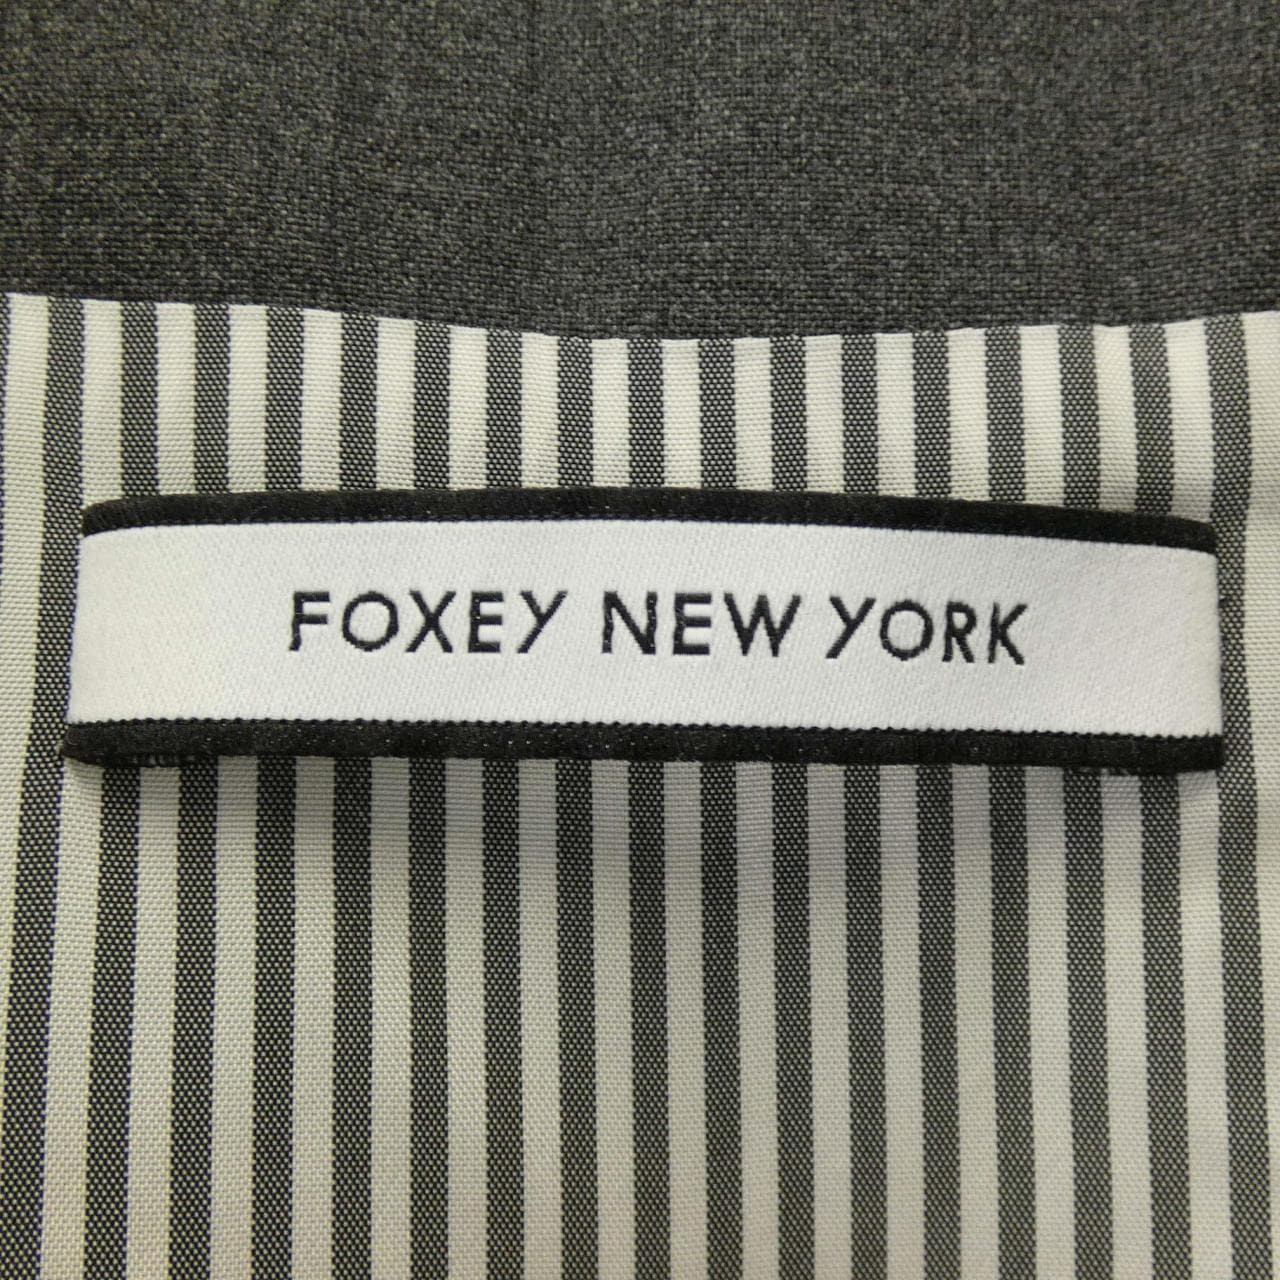 FOXY紐約FOXEY NEW YORK羽絨大衣